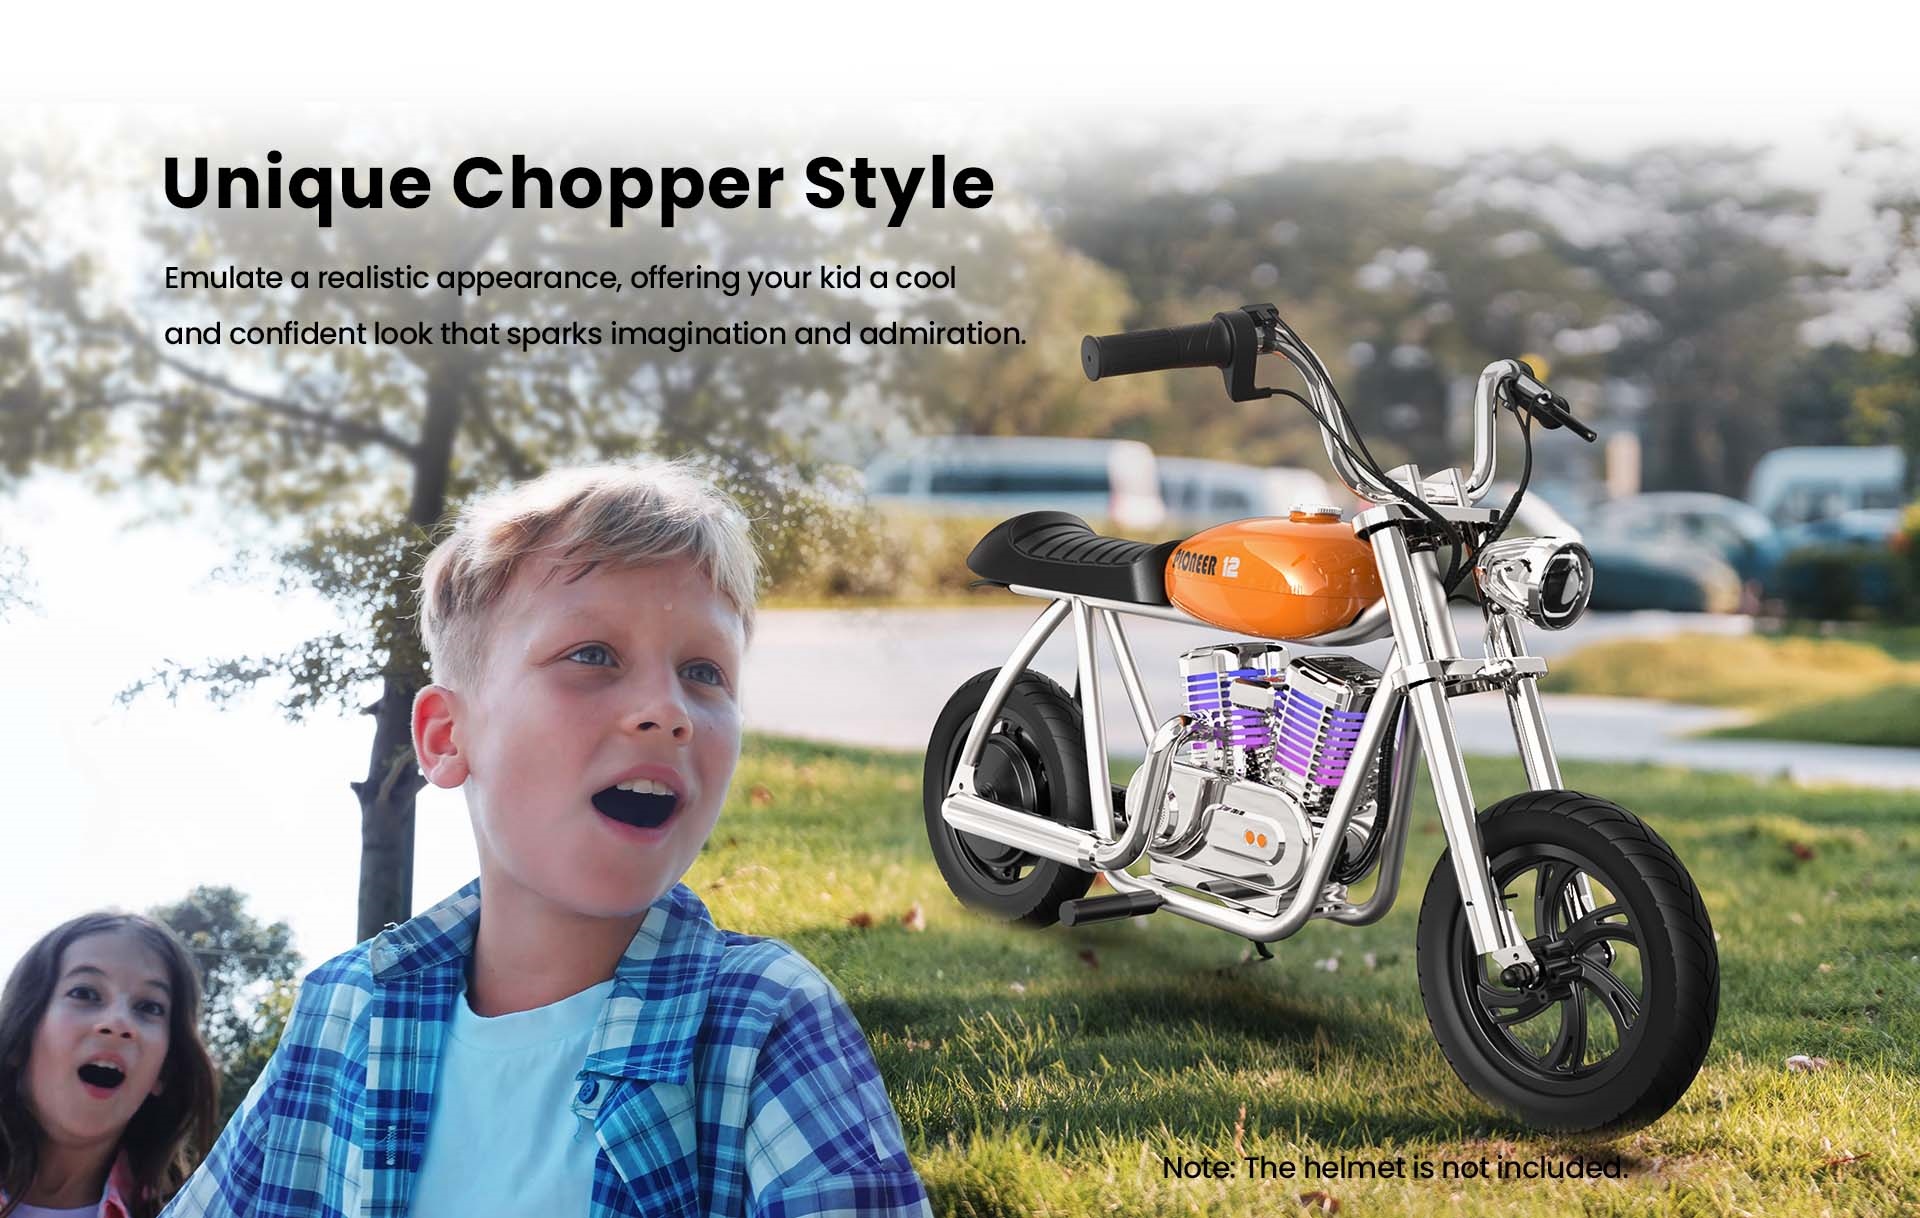 HYPER GOGO Pioneer 12 Plus s aplikáciou Elektrická motorka pre deti, 24V 5.2Ah 160W s pneumatikami 12'x3', maximálny dojazd 12 km - zelená